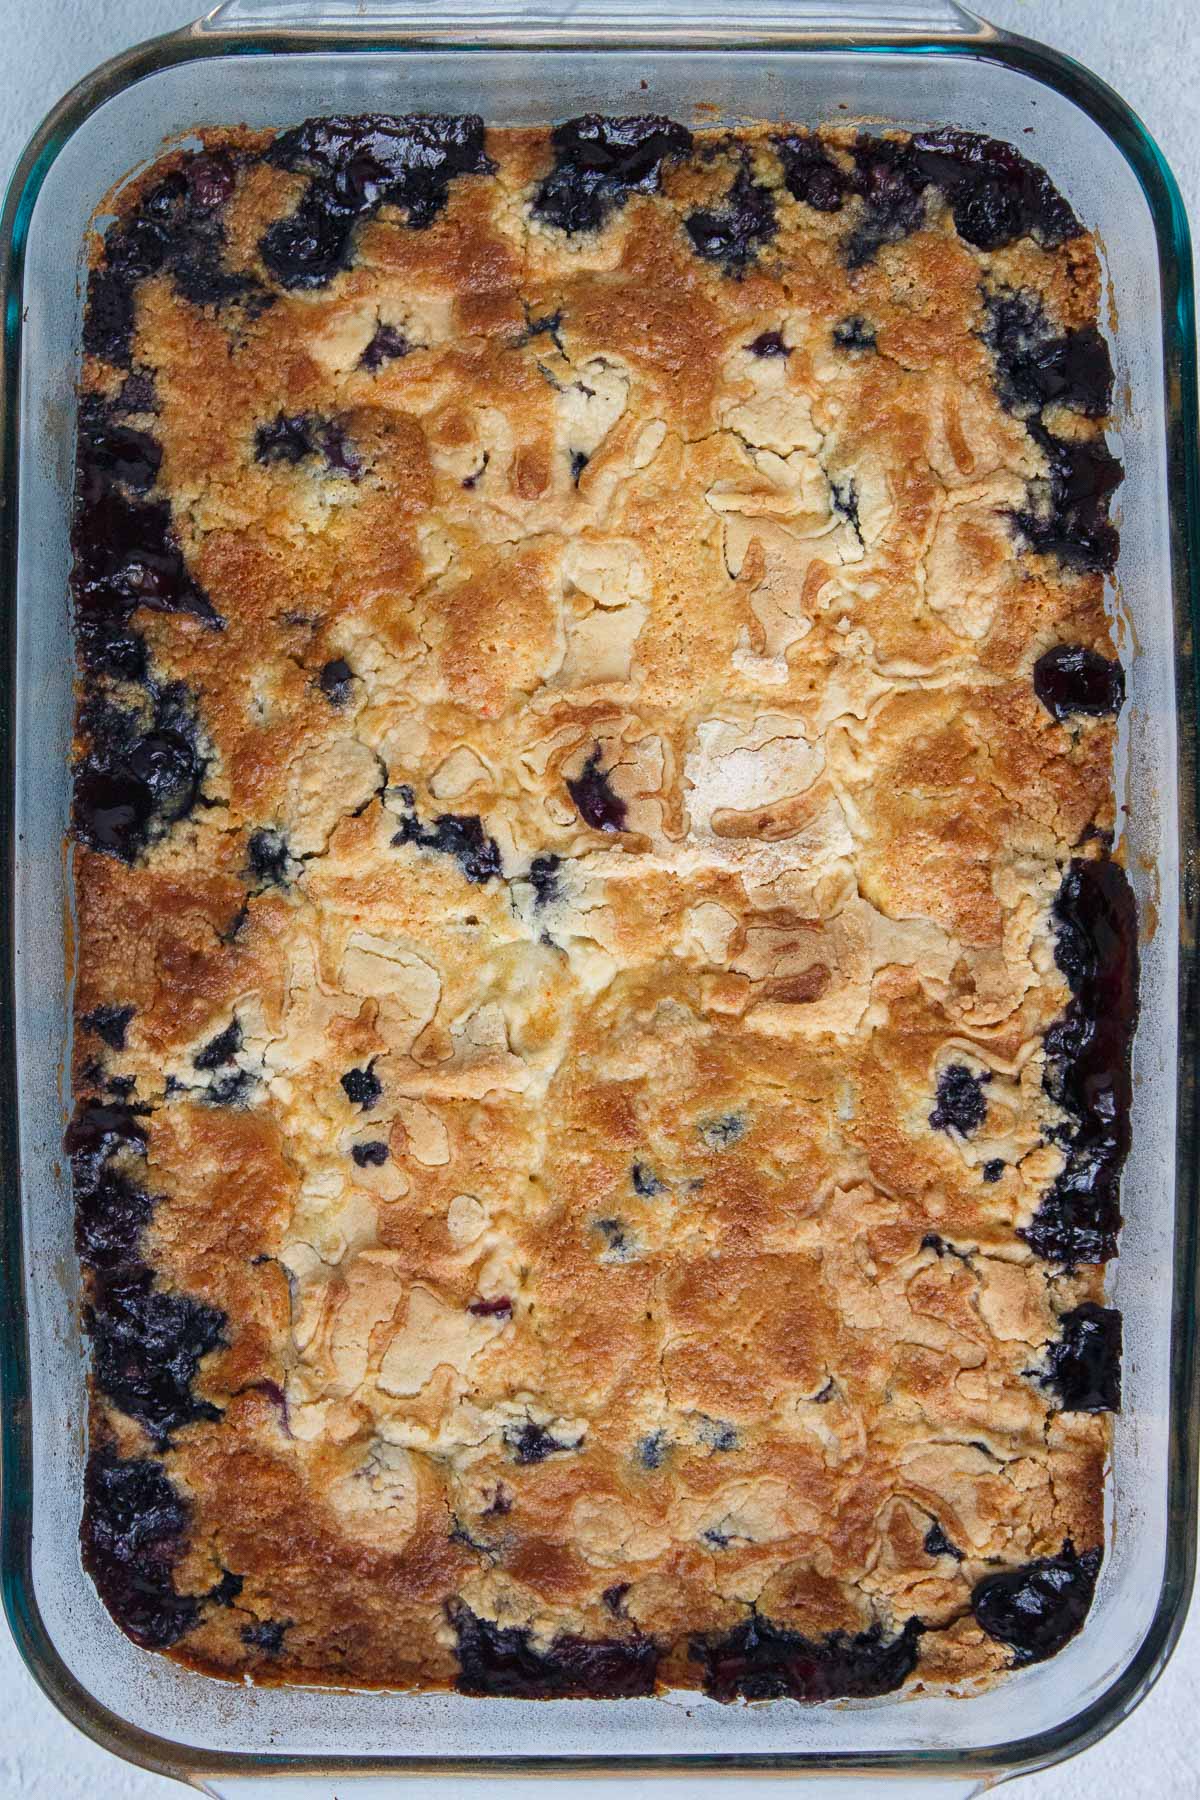 Blueberry Dump Cake baked until golden brown